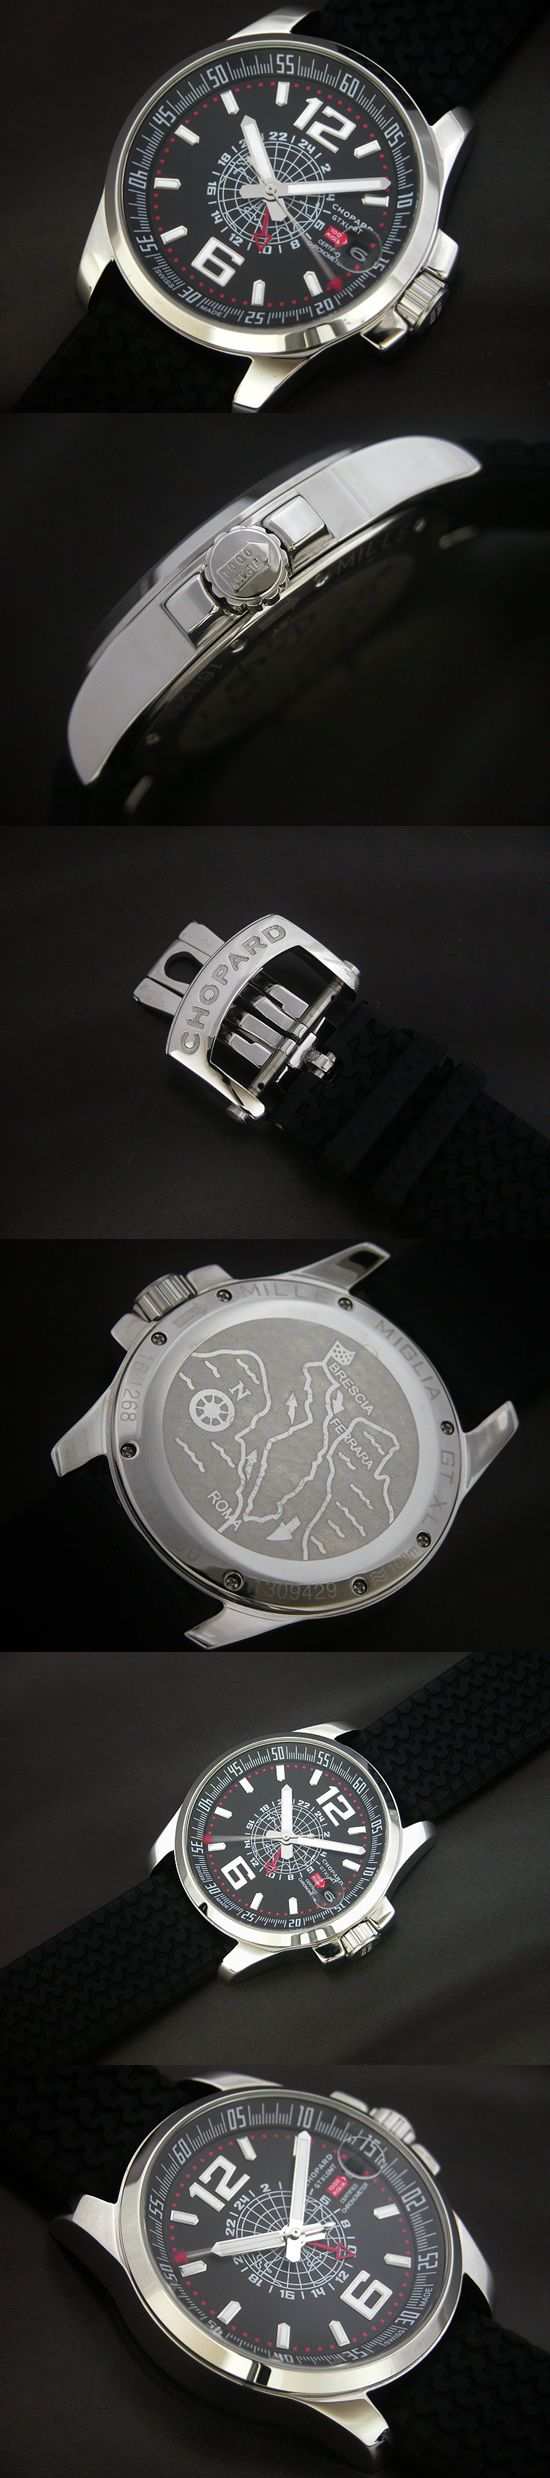 おしゃれなブランド時計がショパール-CHOPARD-ミッレミリア-CH00016J 男性用腕時計を提供します.